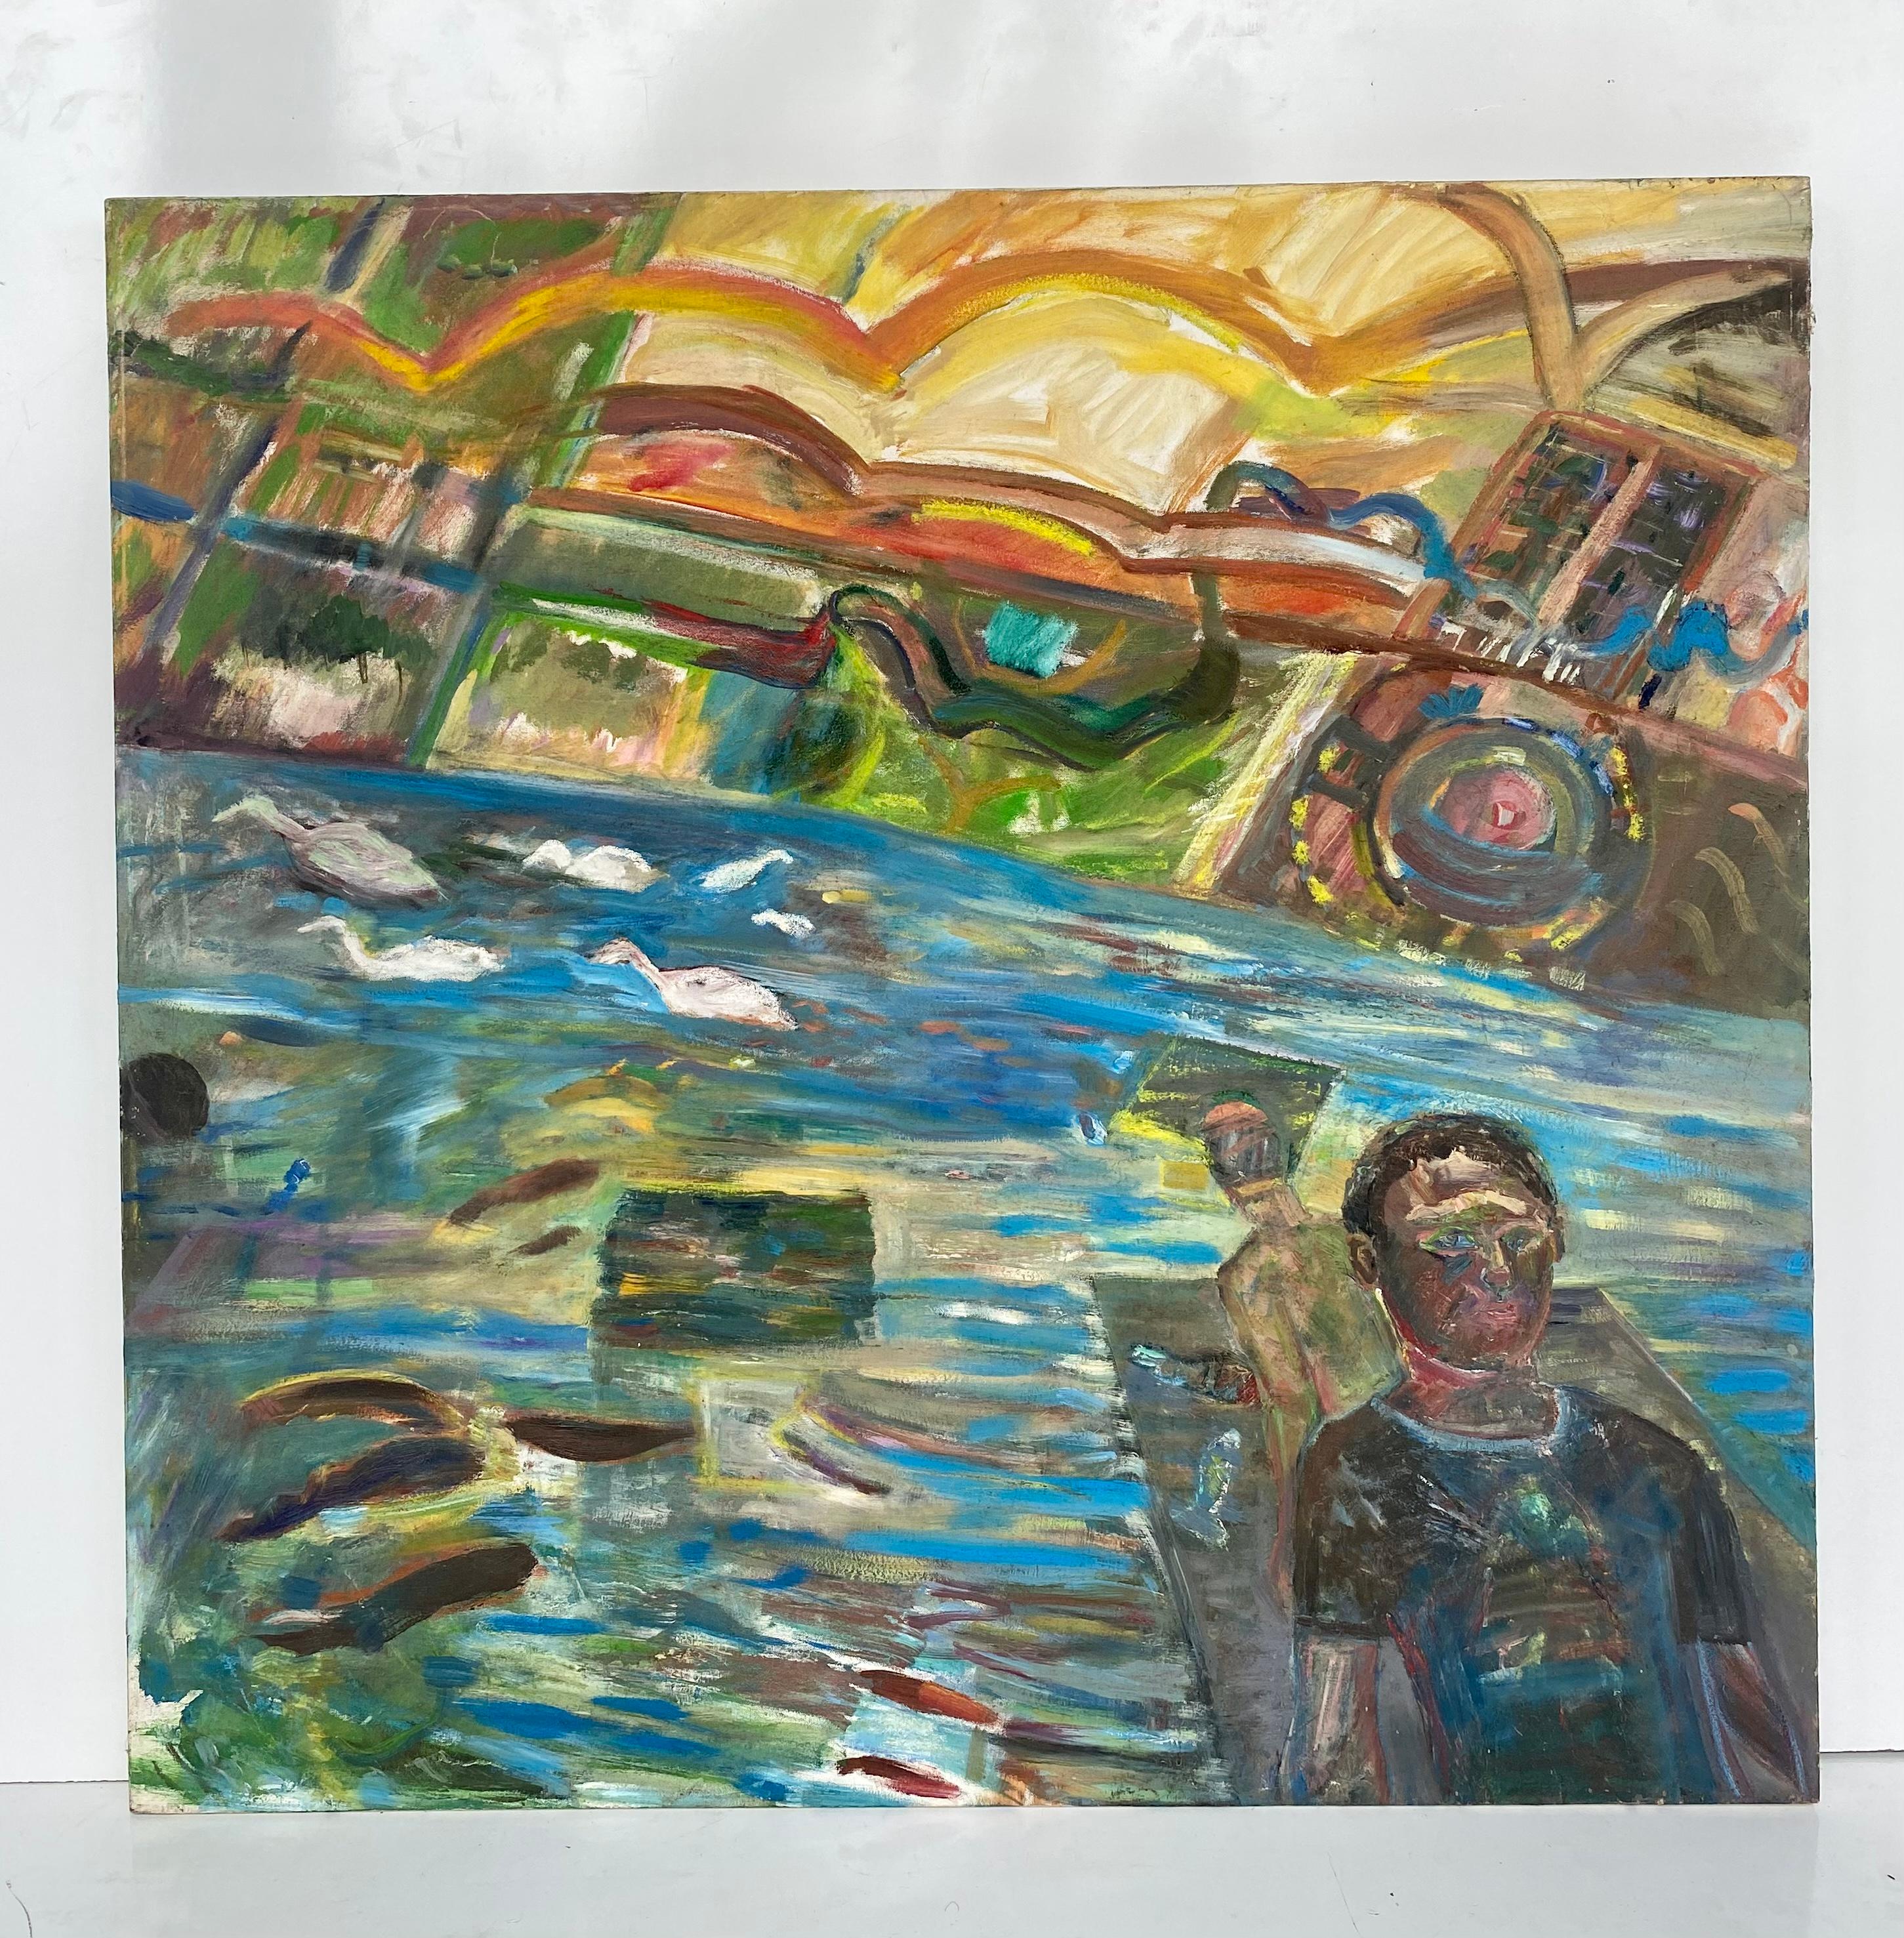 Vintage Warren Fischer peinture abstraite figurative sur toile de lin.

Nous proposons à la vente une peinture abstraite figurative sur toile de lin de l'artiste américain Warren Fischer (1943-2001). Le tableau fait partie de la succession de